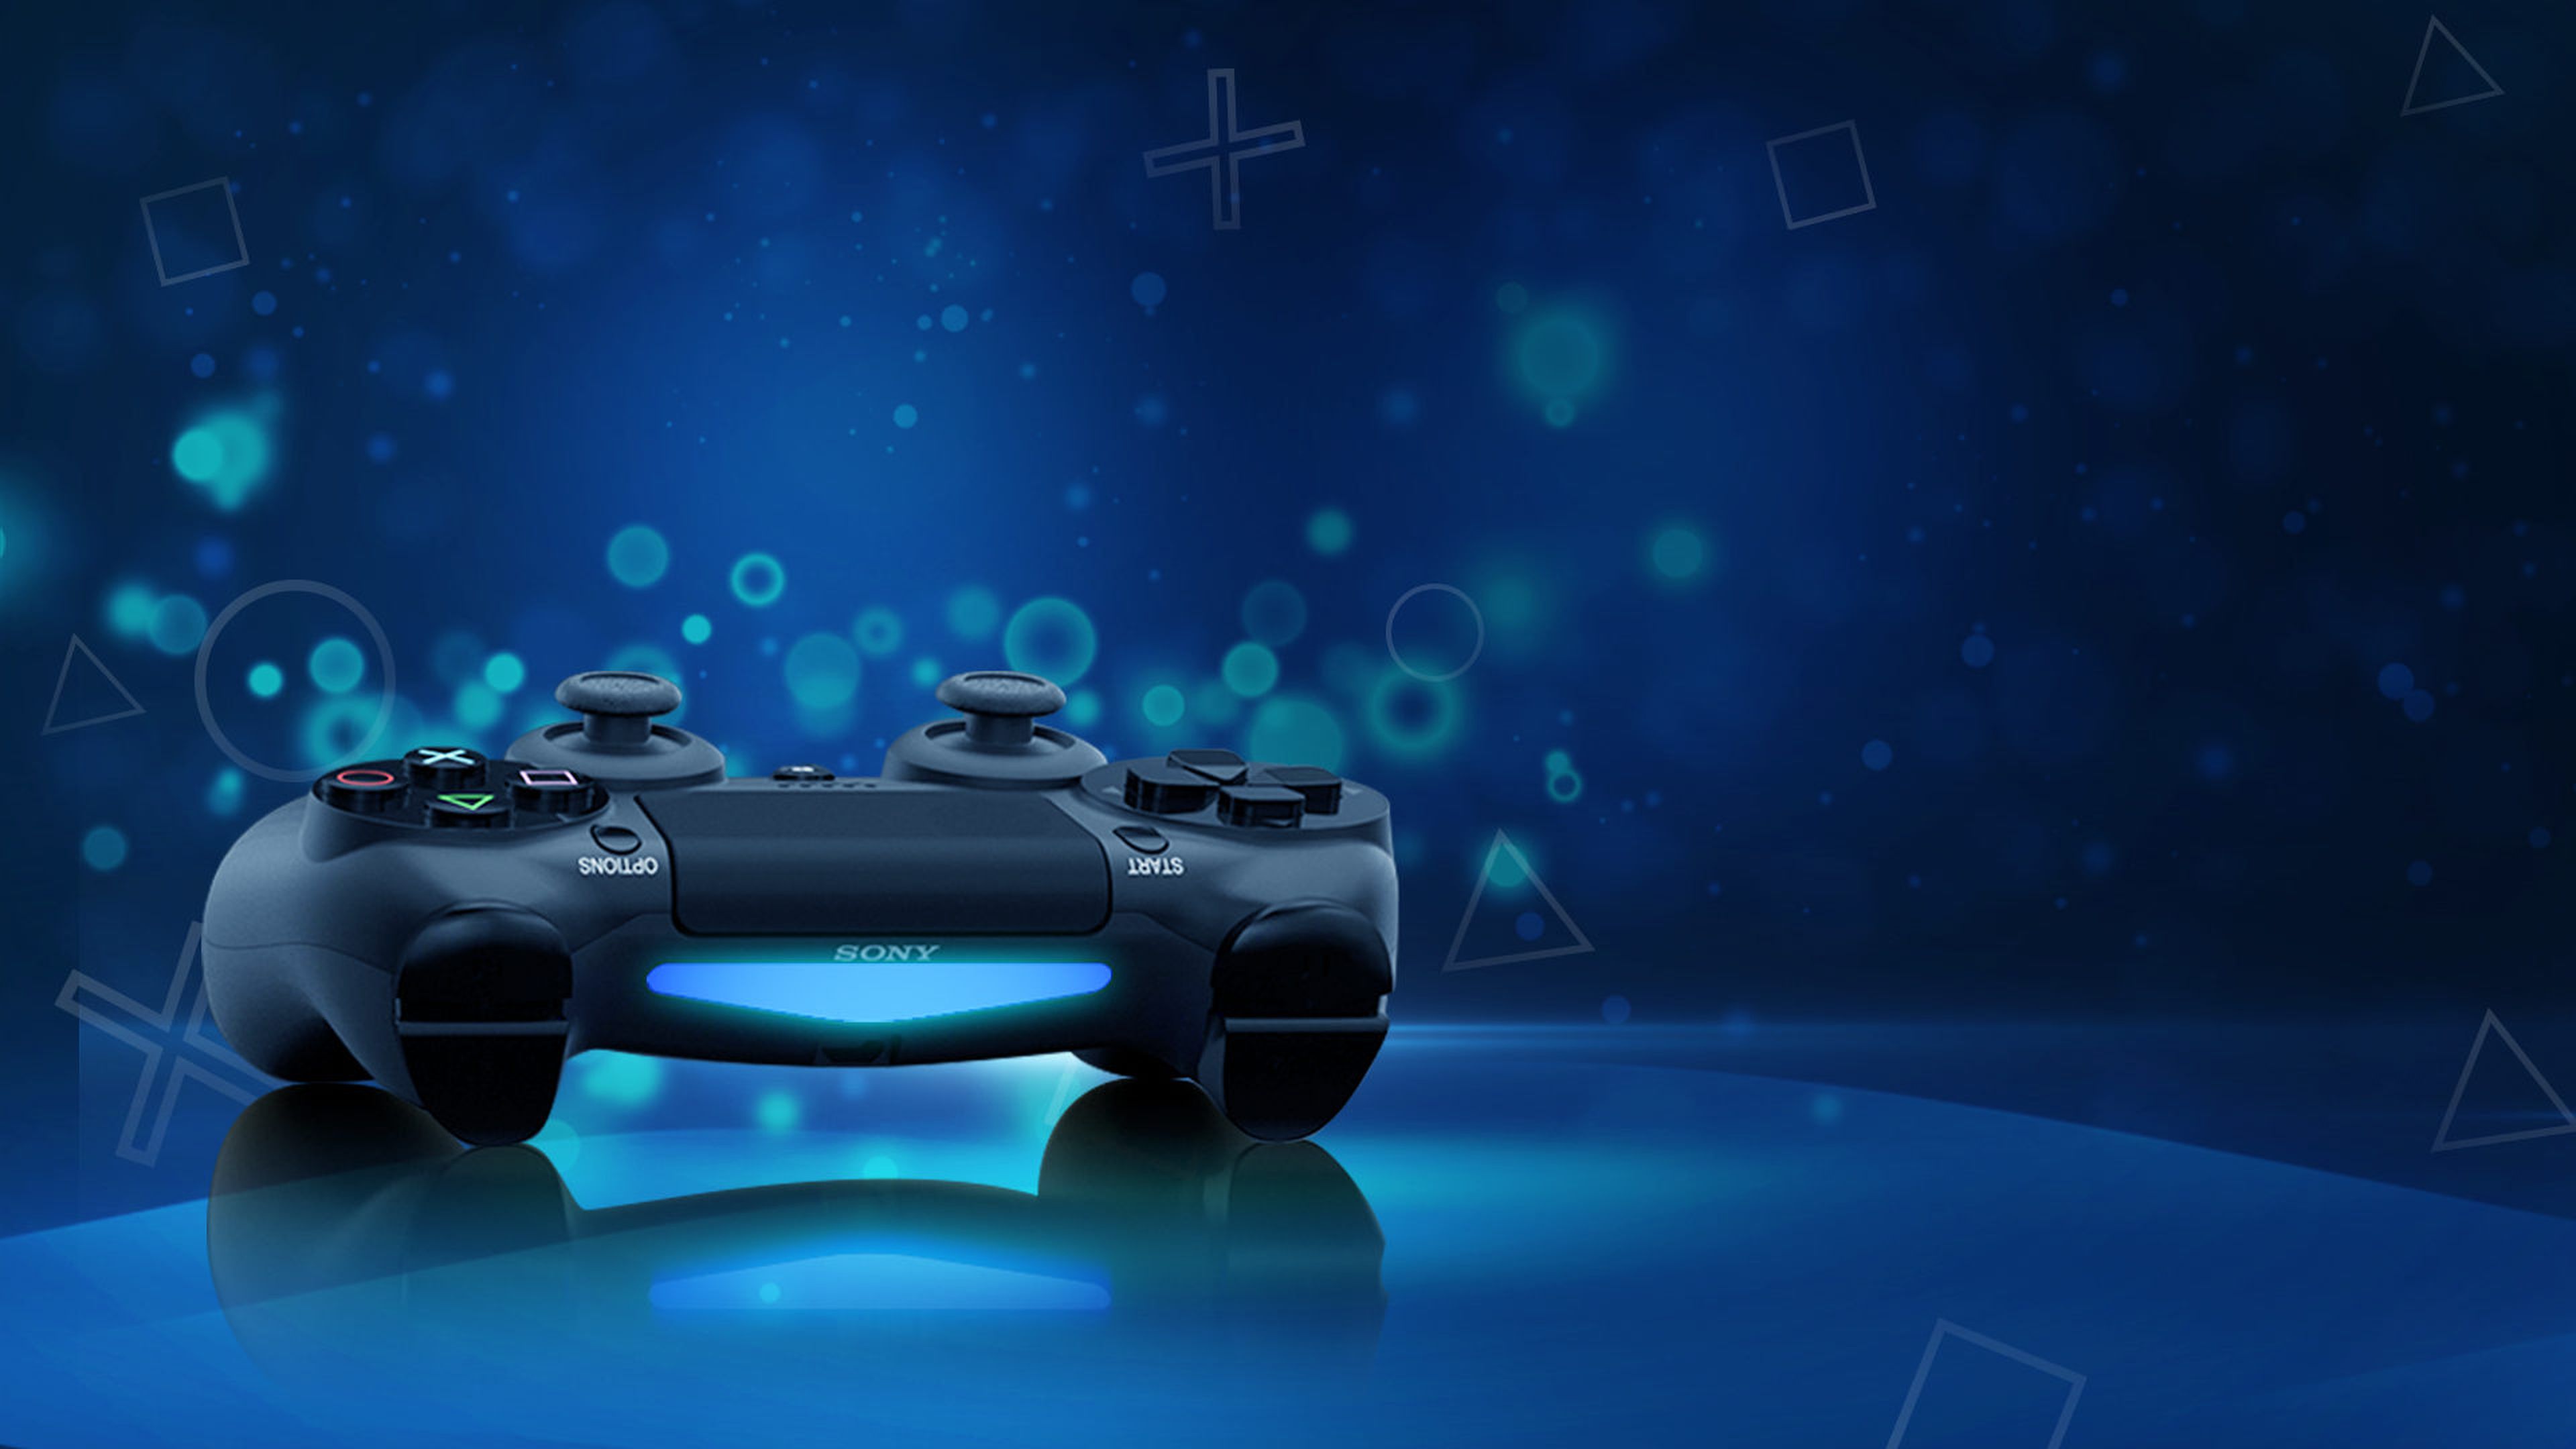 PlayStation 4: ¡aprovecha todas las ventajas que ofrecen sus servicios!